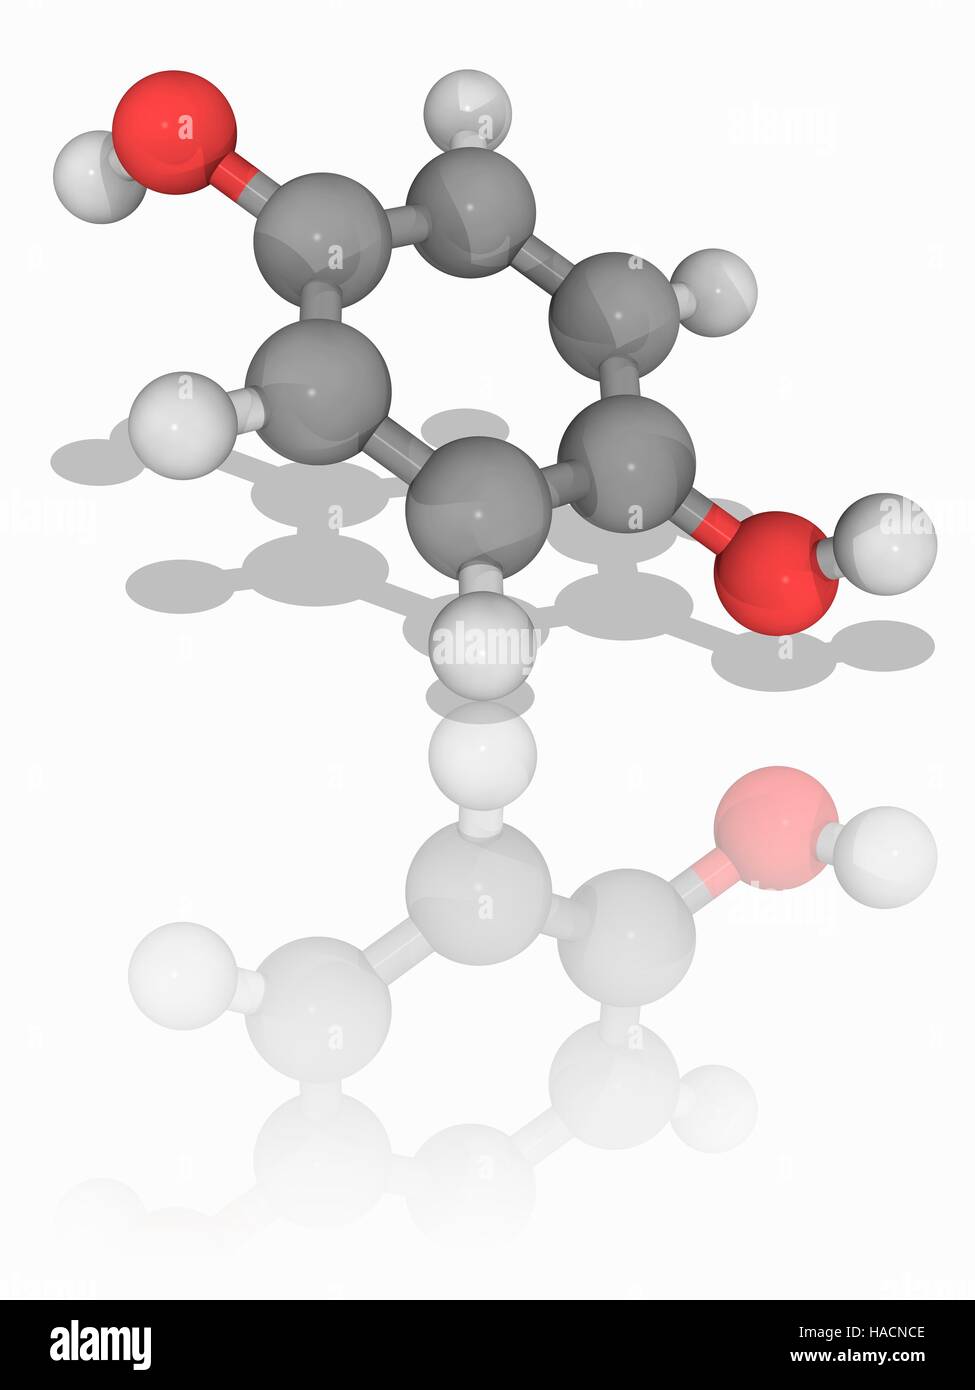 Idrochinone. Il modello molecolare dell'aromatico composto organico di idrochinone (C6.H6.O2). Questo bianco solido granulare viene utilizzato come un agente riducente ed è solubile in acqua. Gli atomi sono rappresentati da sfere e sono codificati a colori: carbonio (grigio), Idrogeno (bianco) e ossigeno (rosso). Illustrazione. Foto Stock